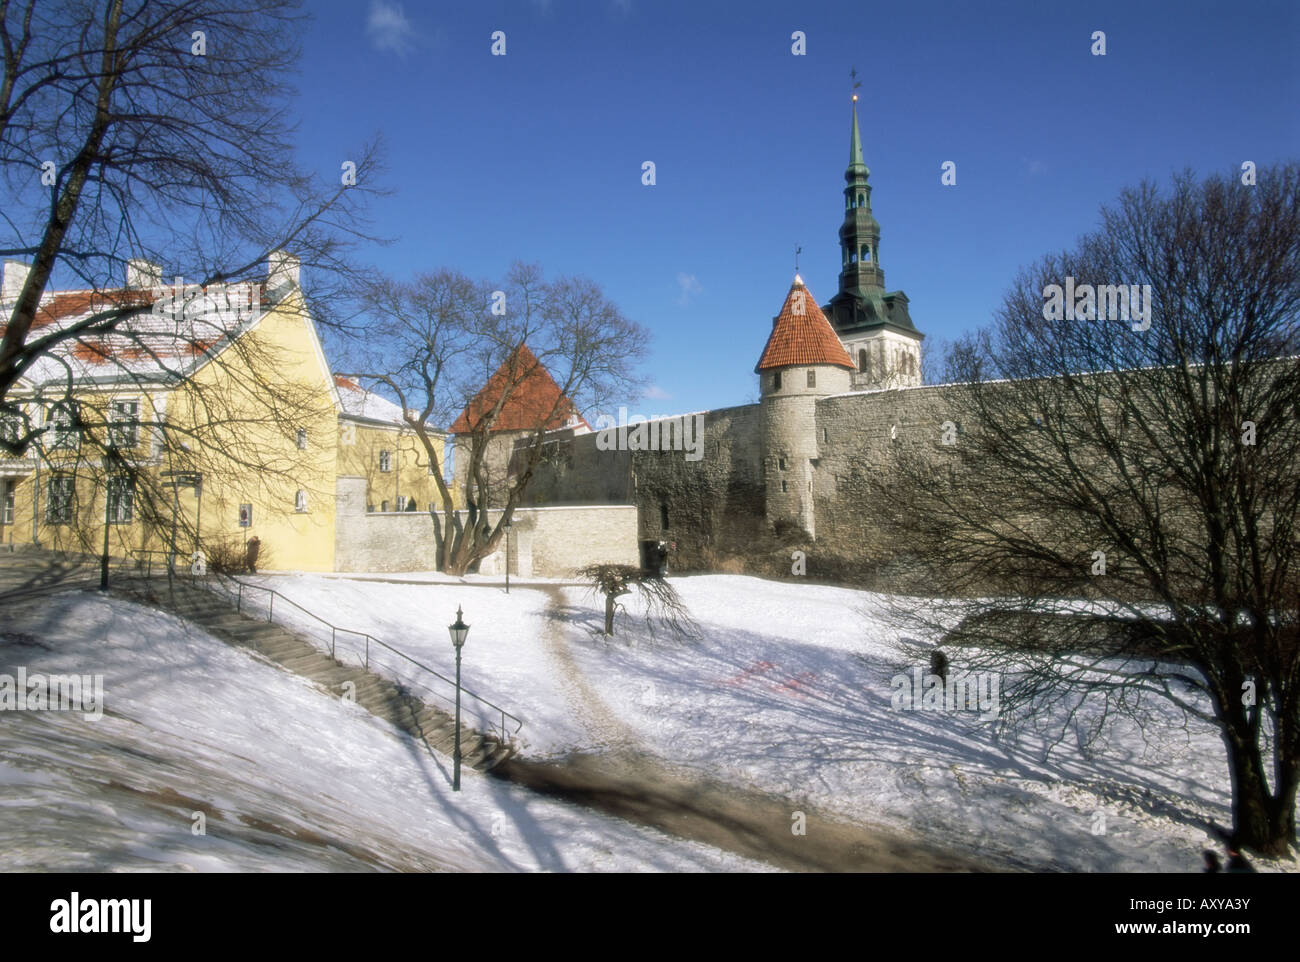 La vieille ville en hiver, Tallinn, Site du patrimoine mondial de l'UNESCO, l'Estonie, pays Baltes, Europe Banque D'Images